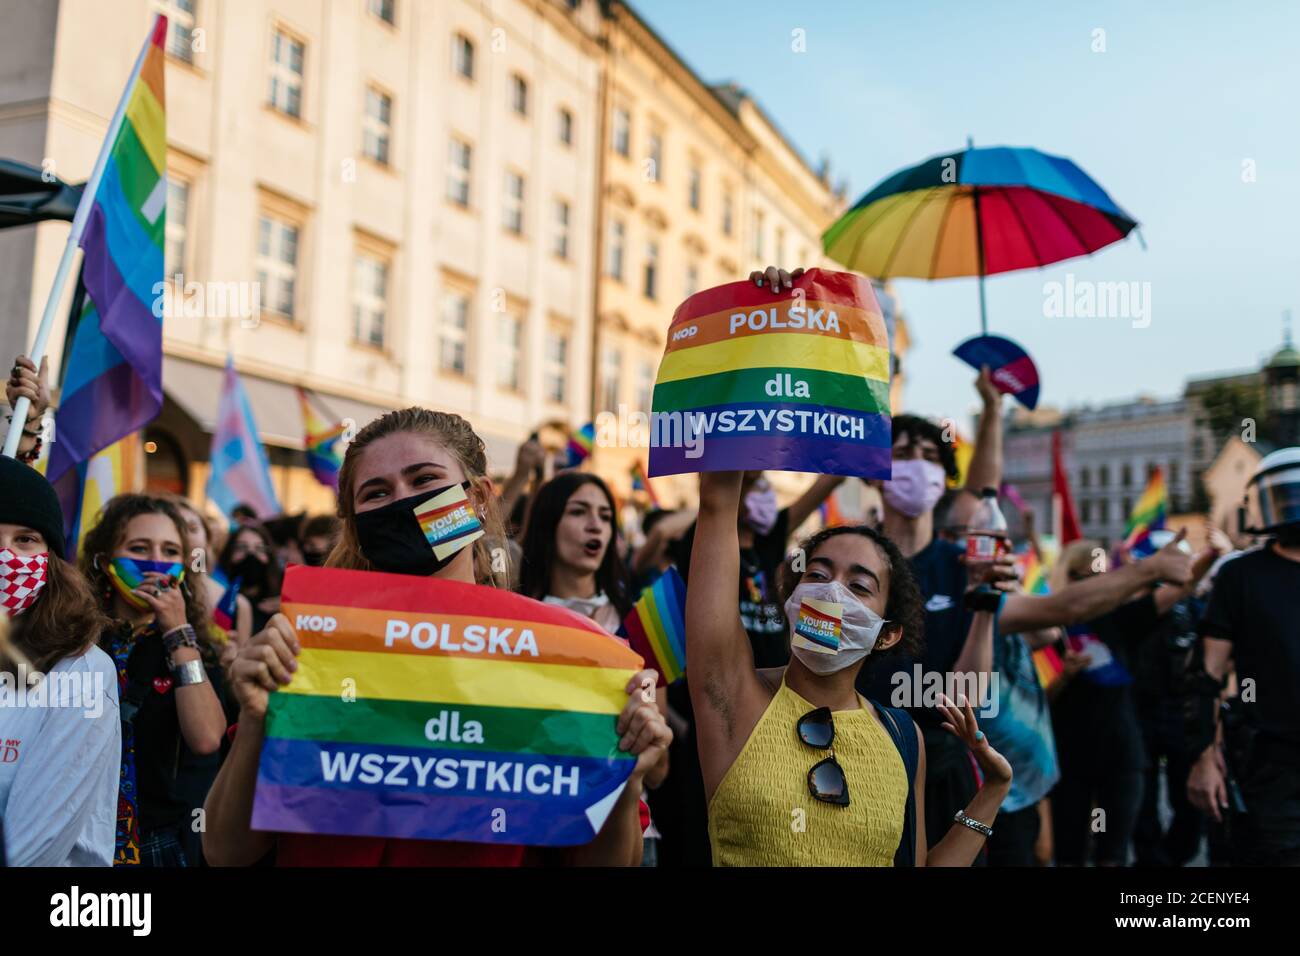 I partecipanti tengono cartelli che dicono la Polonia per tutti durante il mese di marzo.la marcia annuale di uguaglianza, conosciuta anche come Pride Parade, ha attratto un numero particolarmente grande di partecipanti, così come due contromunazioni. In Polonia, recentemente si è svolto un acceso dibattito pubblico tra sostenitori della tolleranza, con una visione di centro o di sinistra, e circoli conservatori, nazionalisti e cattolici di destra, che stanno esprimendo la loro avversione alla comunità LGBT in modo sempre più spietato. Gli oppositori della comunità LGBT lo accusano di cercare di realizzare una rivoluzione morale. Quelli a favore di tol Foto Stock